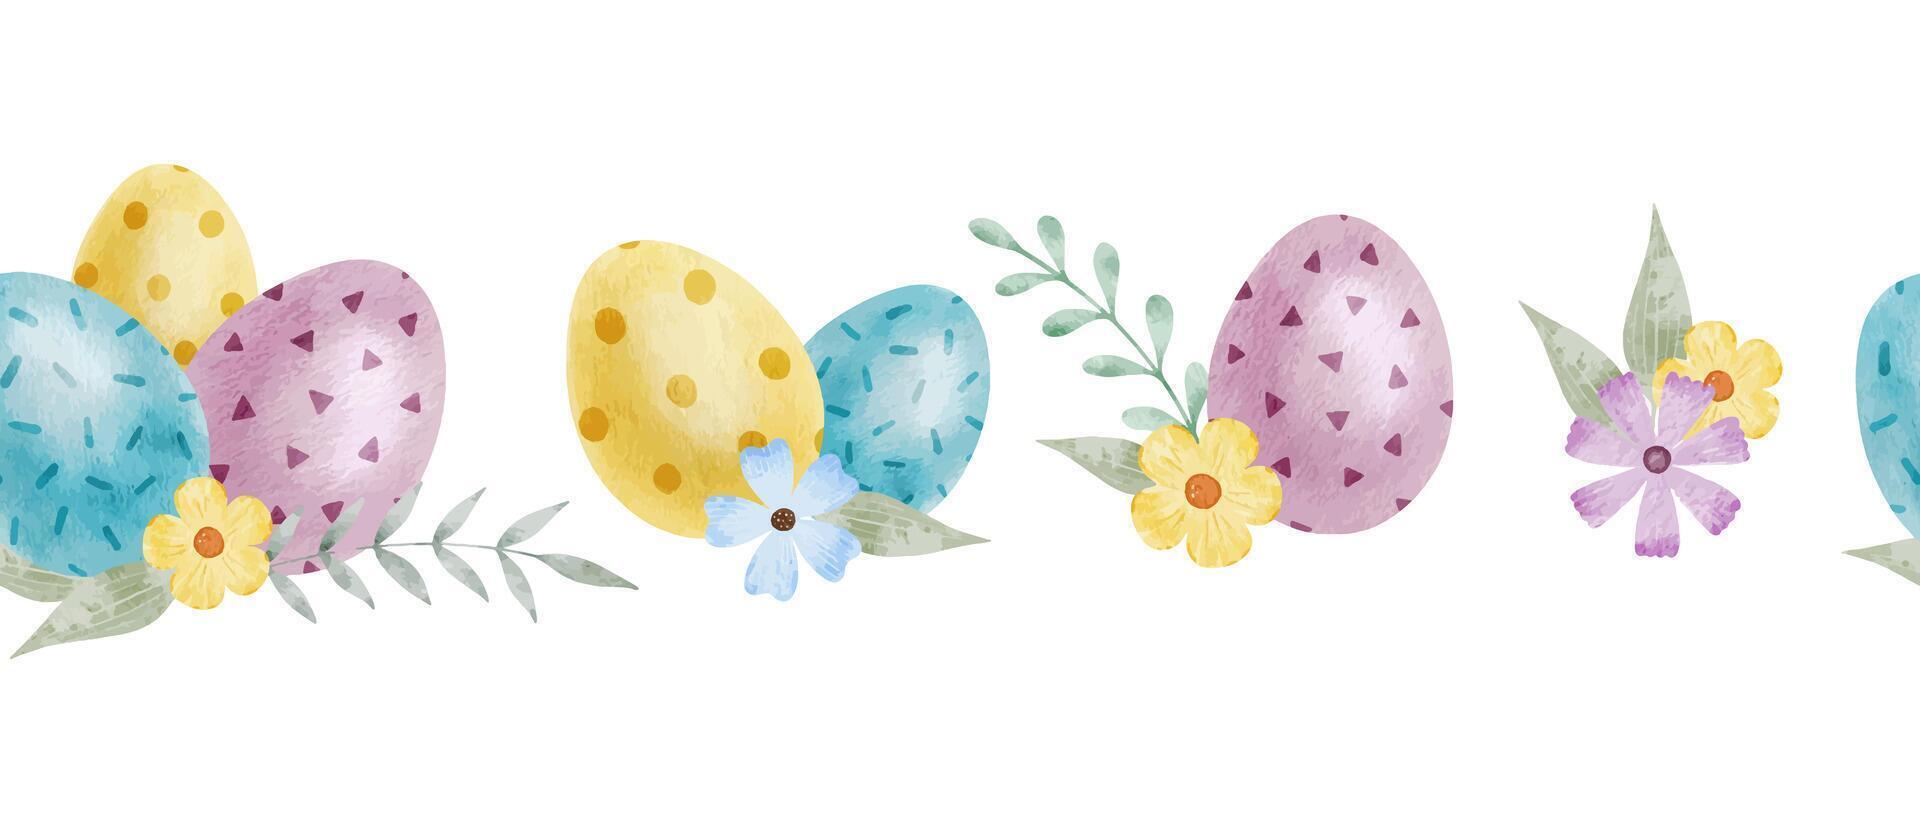 schattig kleurrijk Pasen eieren, bloemen en bladeren. voorjaar naadloos grens van met Pasen eieren met pastel kleuren. geïsoleerd waterverf illustratie. sjabloon voor Pasen kaarten, dekt, affiches, uitnodigingen vector